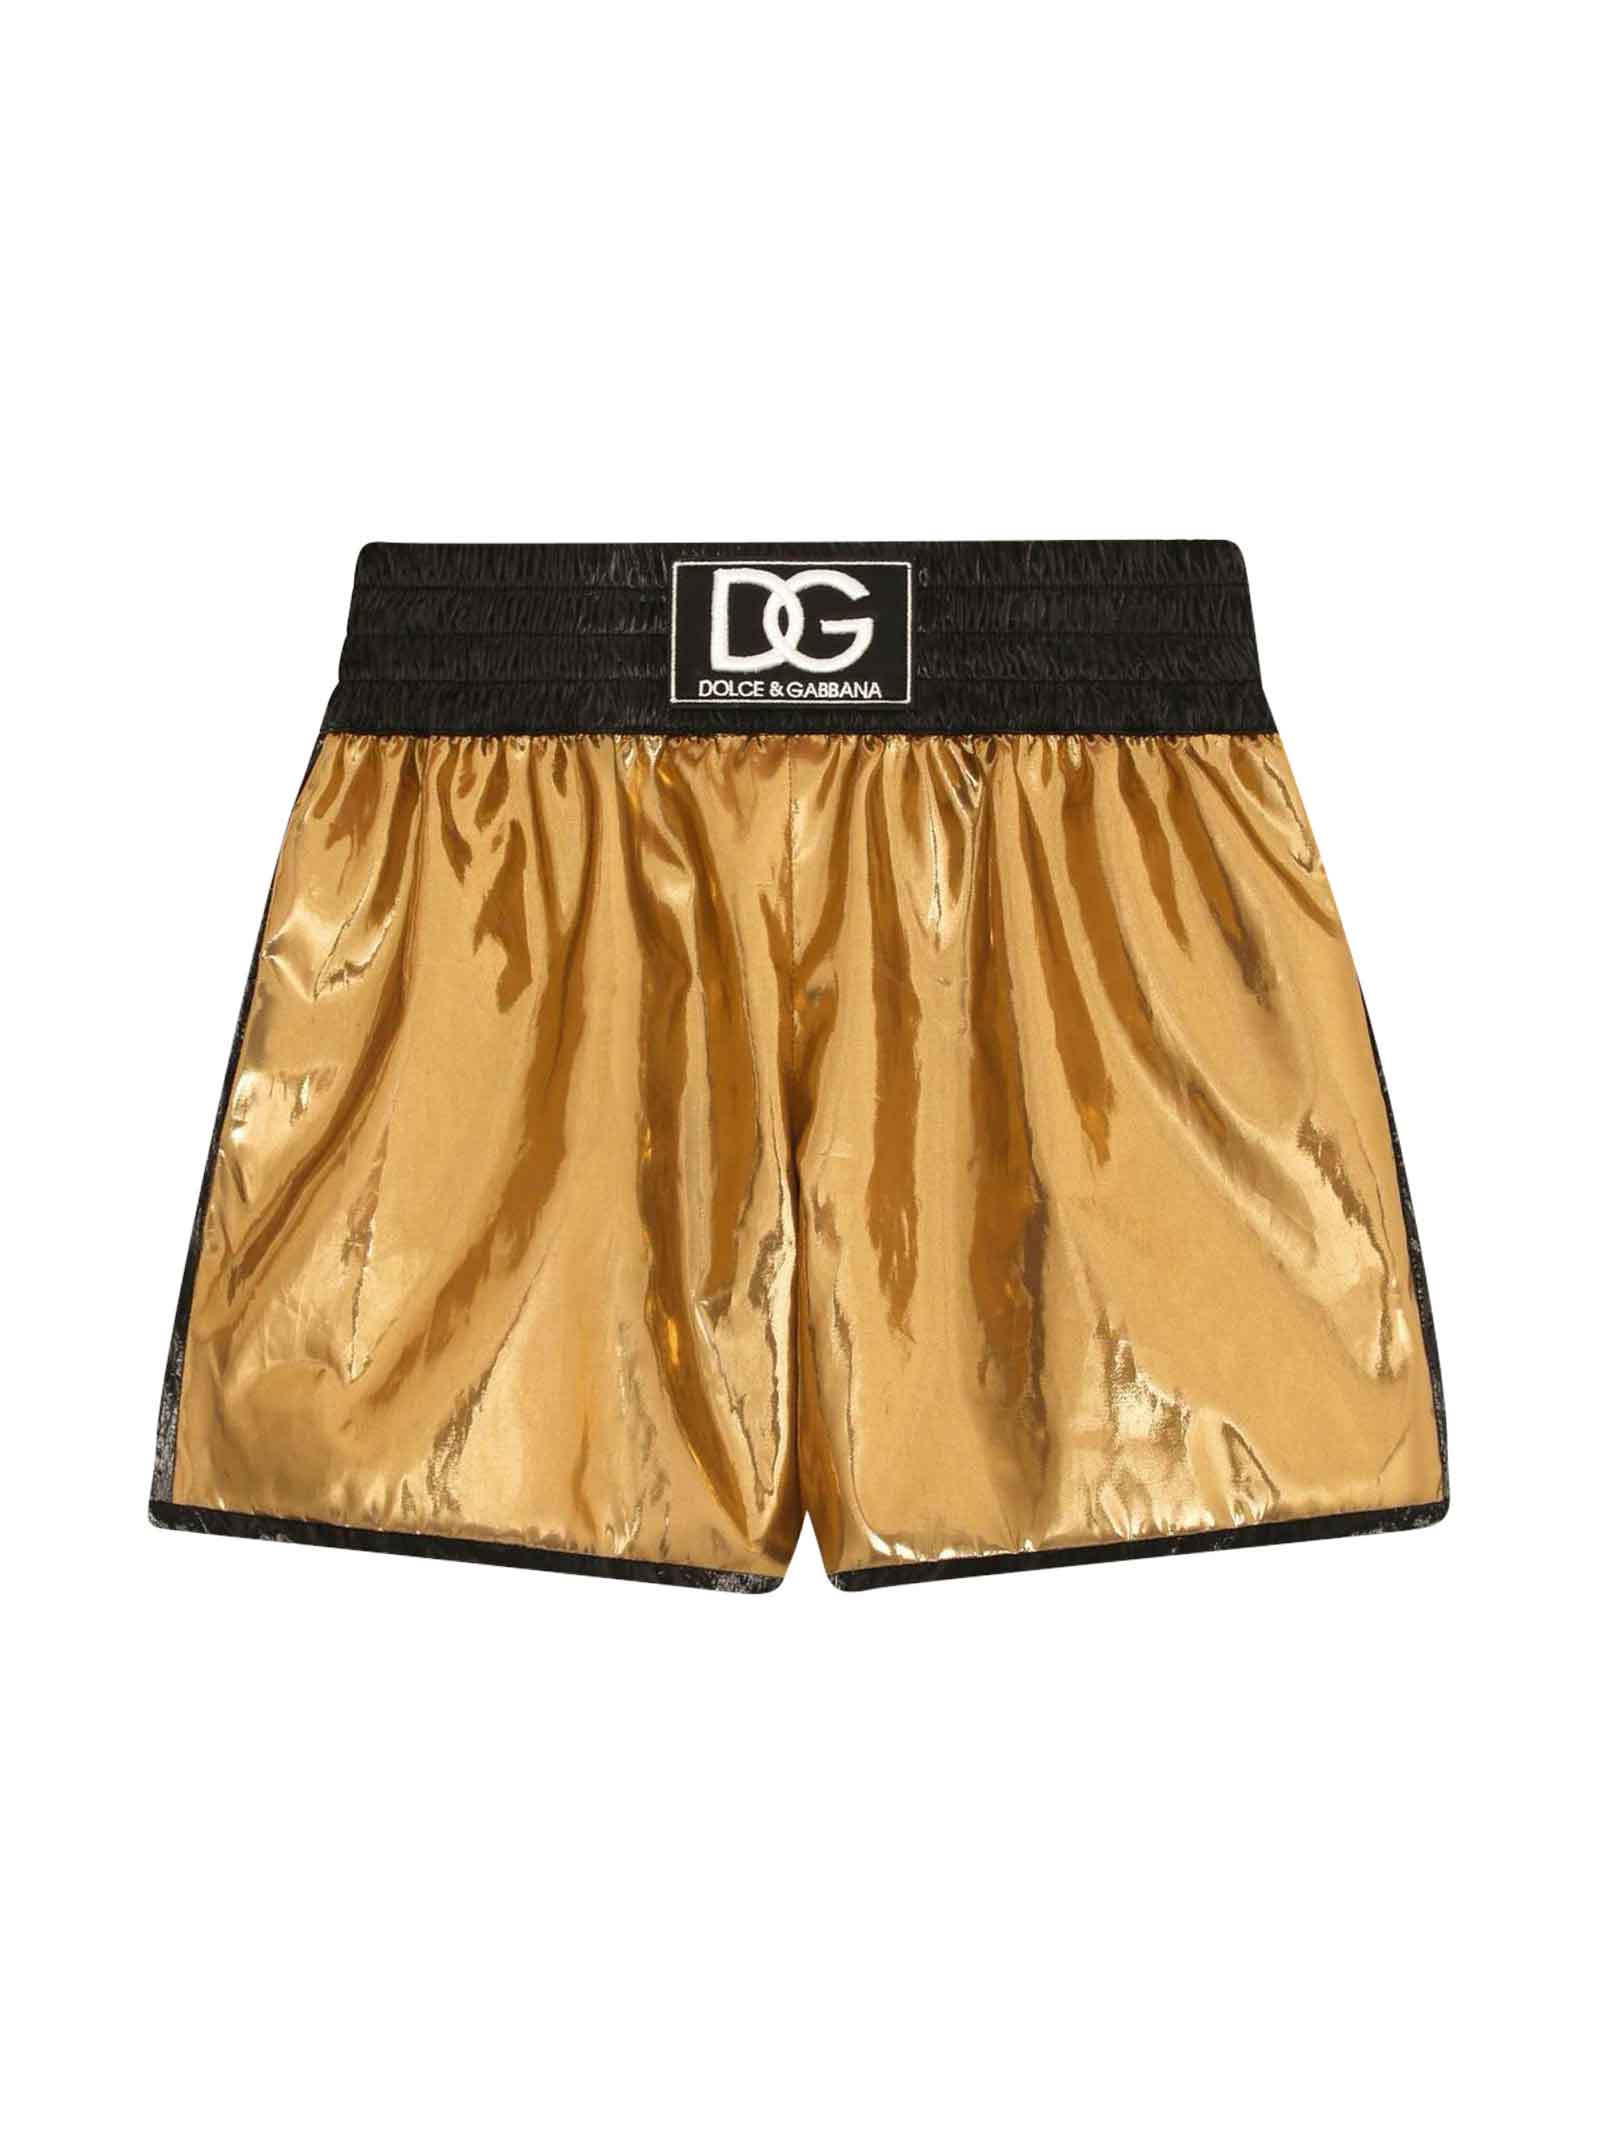 Dolce & Gabbana Gold Shorts